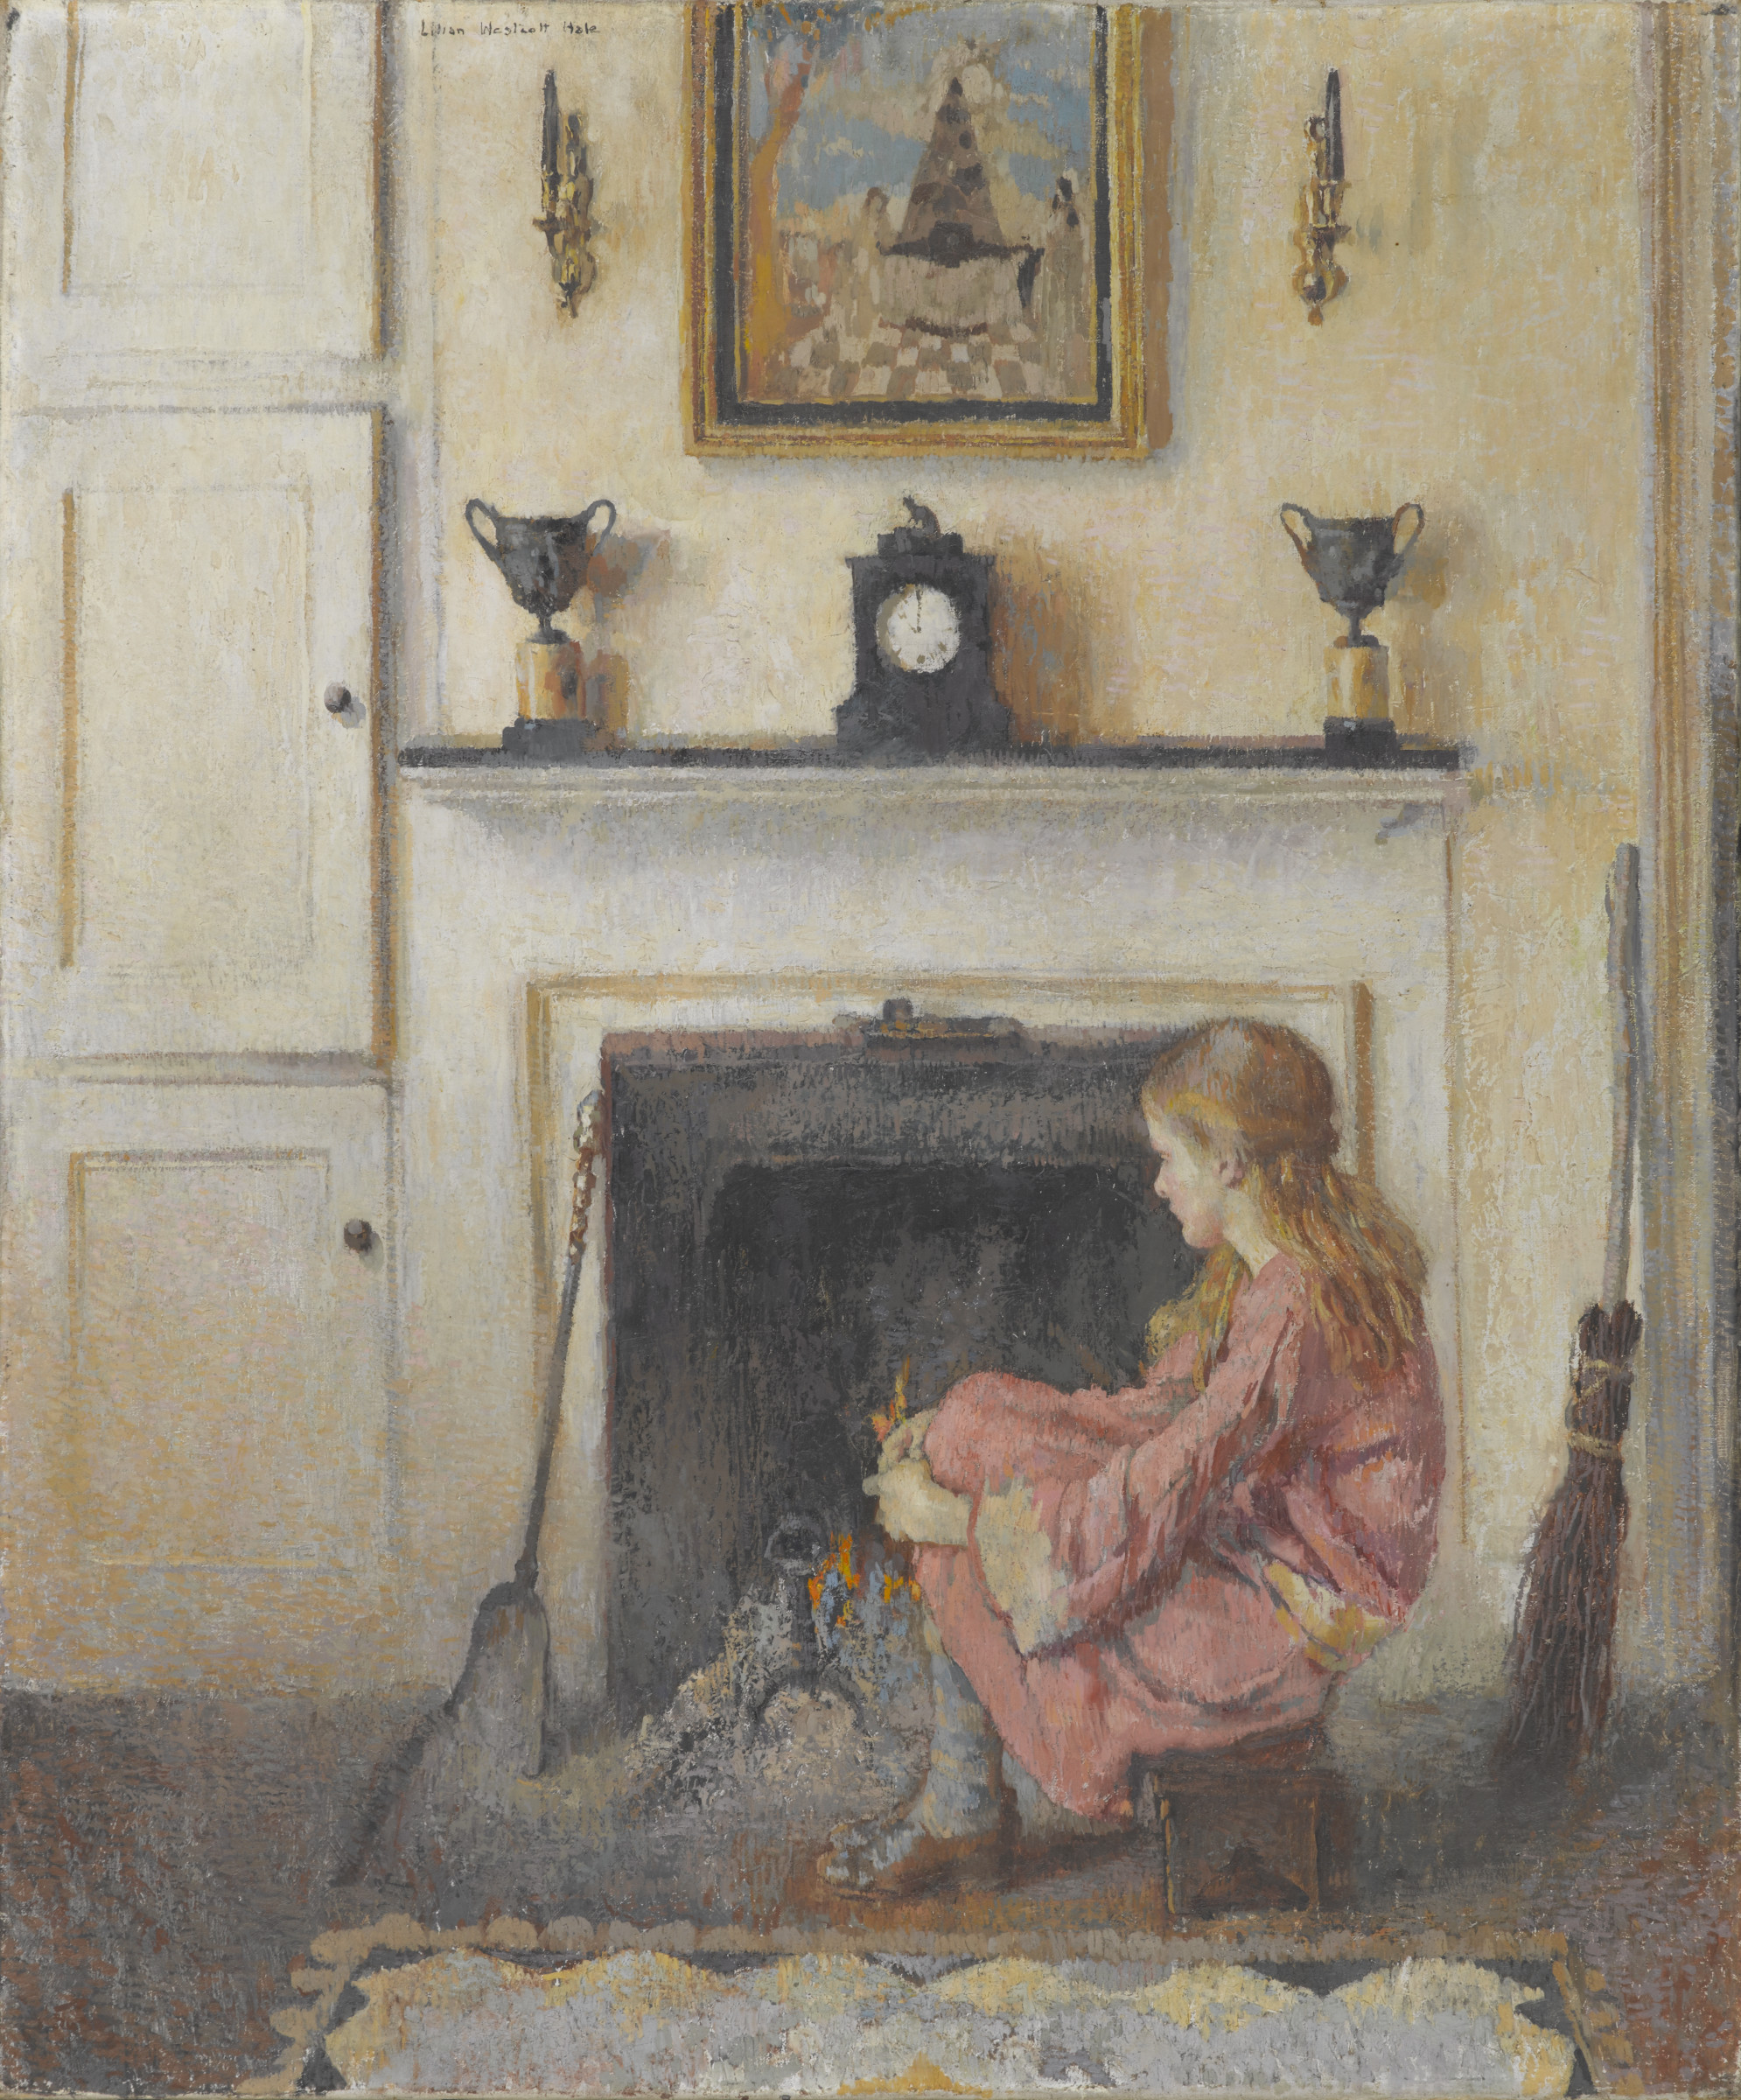 Alice Sit by the Fire by Lilian Westcott Hale - 1925 - 91.4 x 76.2 cm 